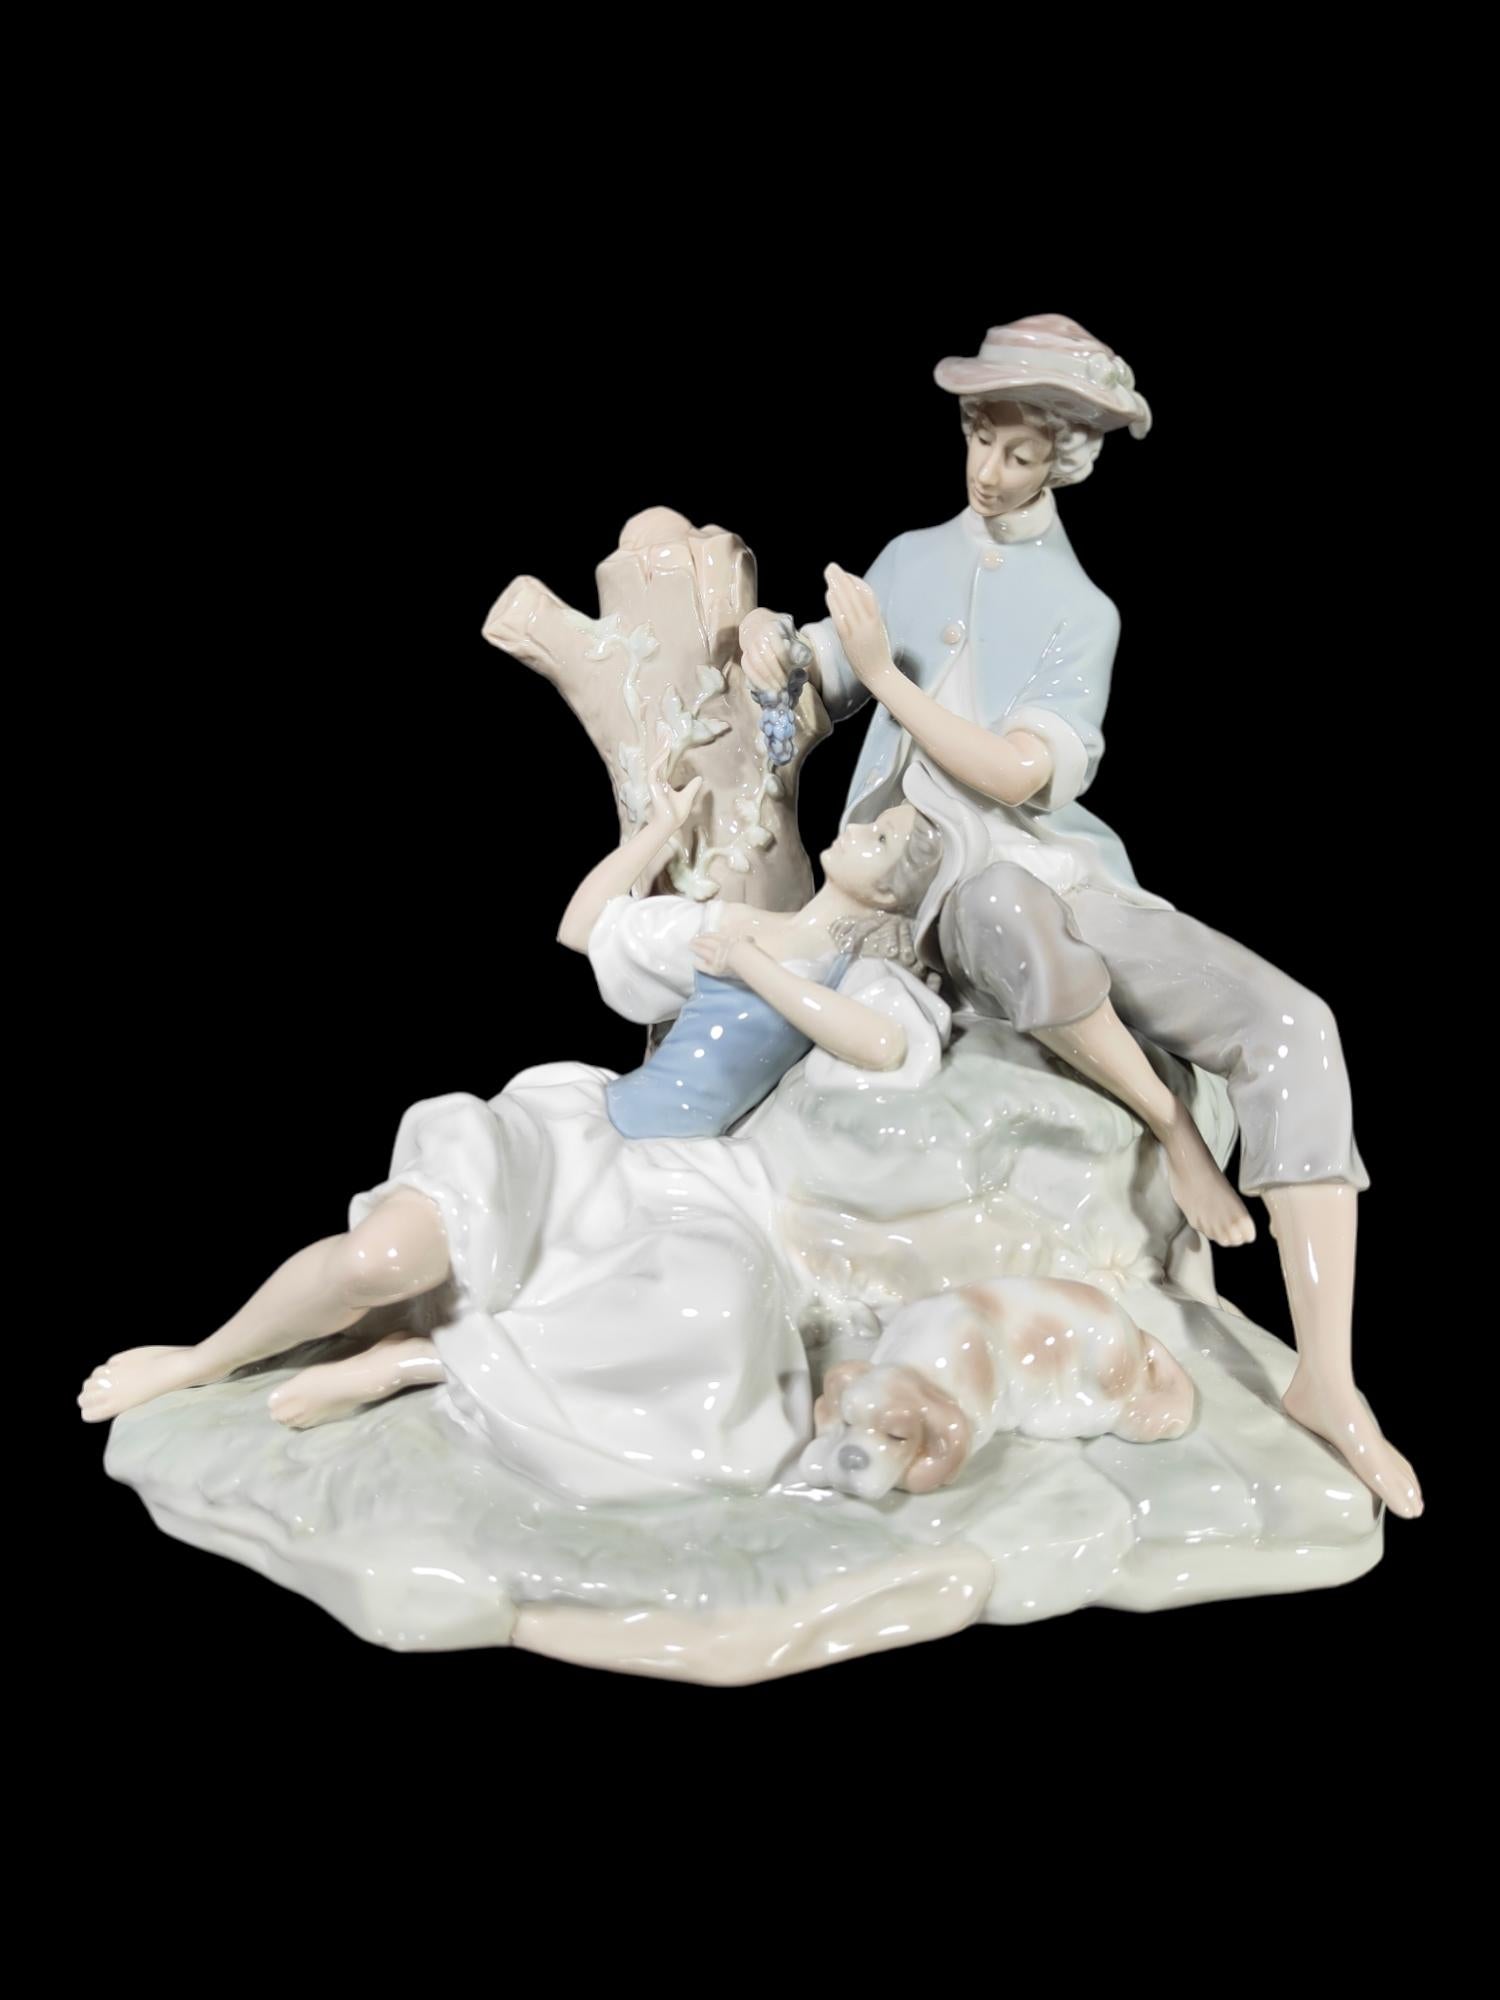 Elegante romantische Skulptur mit 2 Figuren aus der Zeit um 1900 aus Lladro-Porzellan, hergestellt in den 1970er Jahren. Ausgelaufen. Perfekter Zustand. Maße: 30x30x29 cm.
Die Manufaktur Lladró ist als die renommierteste Porzellanmanufaktur